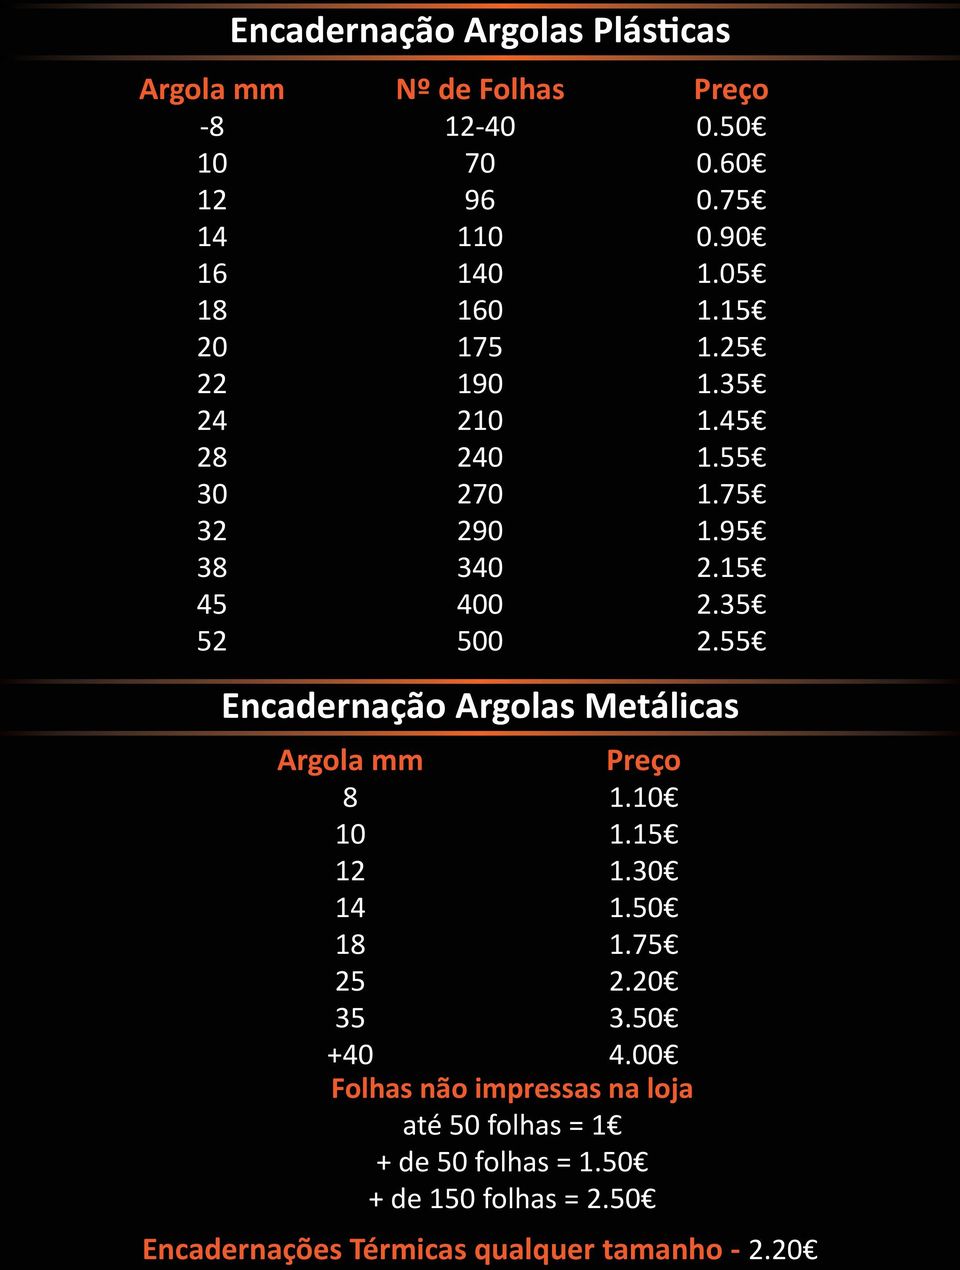 55 Encadernação Argolas Metálicas Argola mm Preço 8 1.10 10 1.15 12 1.30 14 1.50 18 1.75 25 2.20 35 3.50 +40 4.